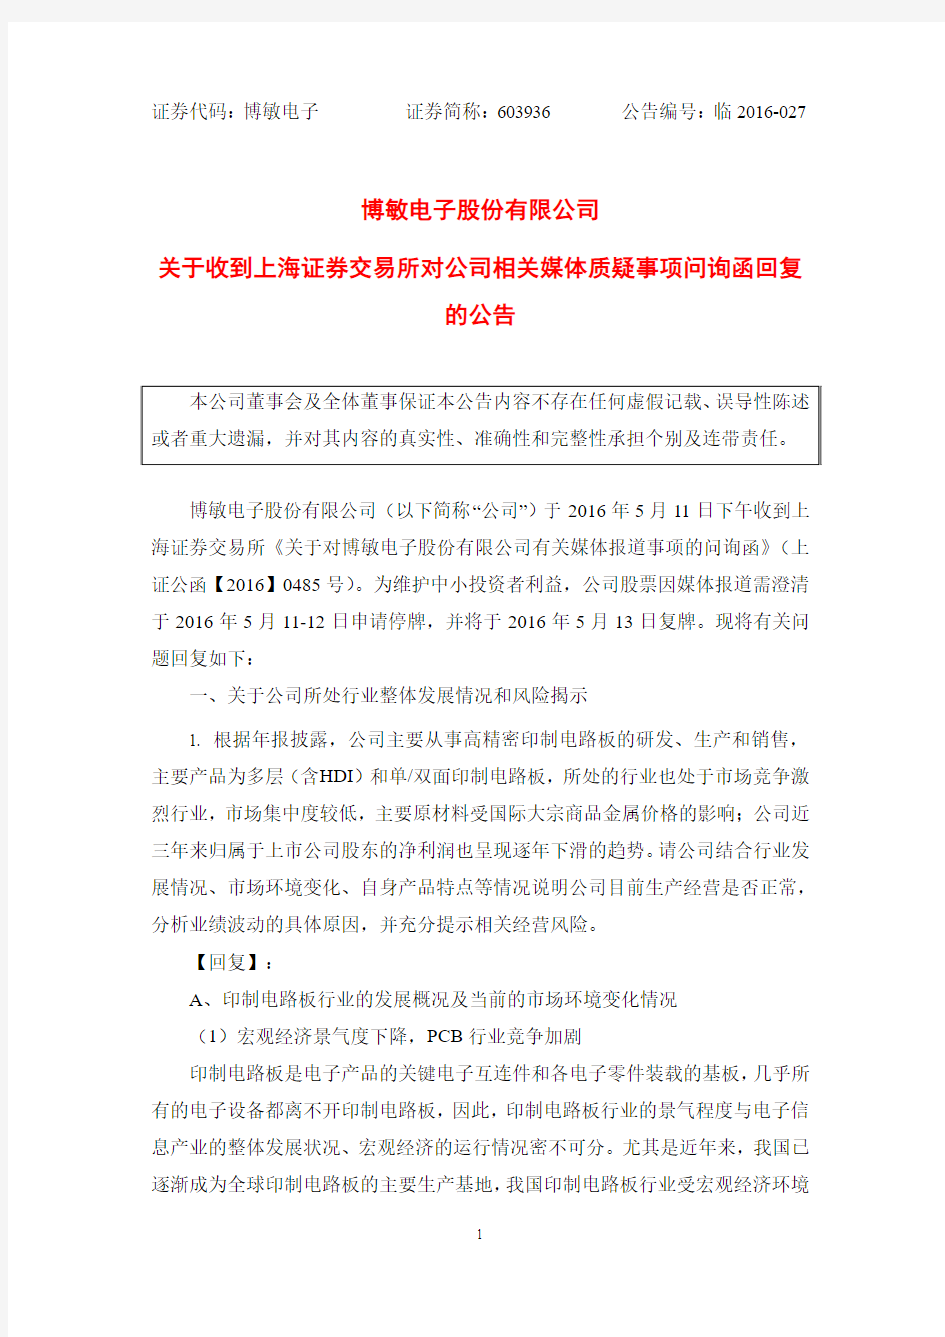 博敏电子股份有限公司 关于收到上海证券交易所对公司相关